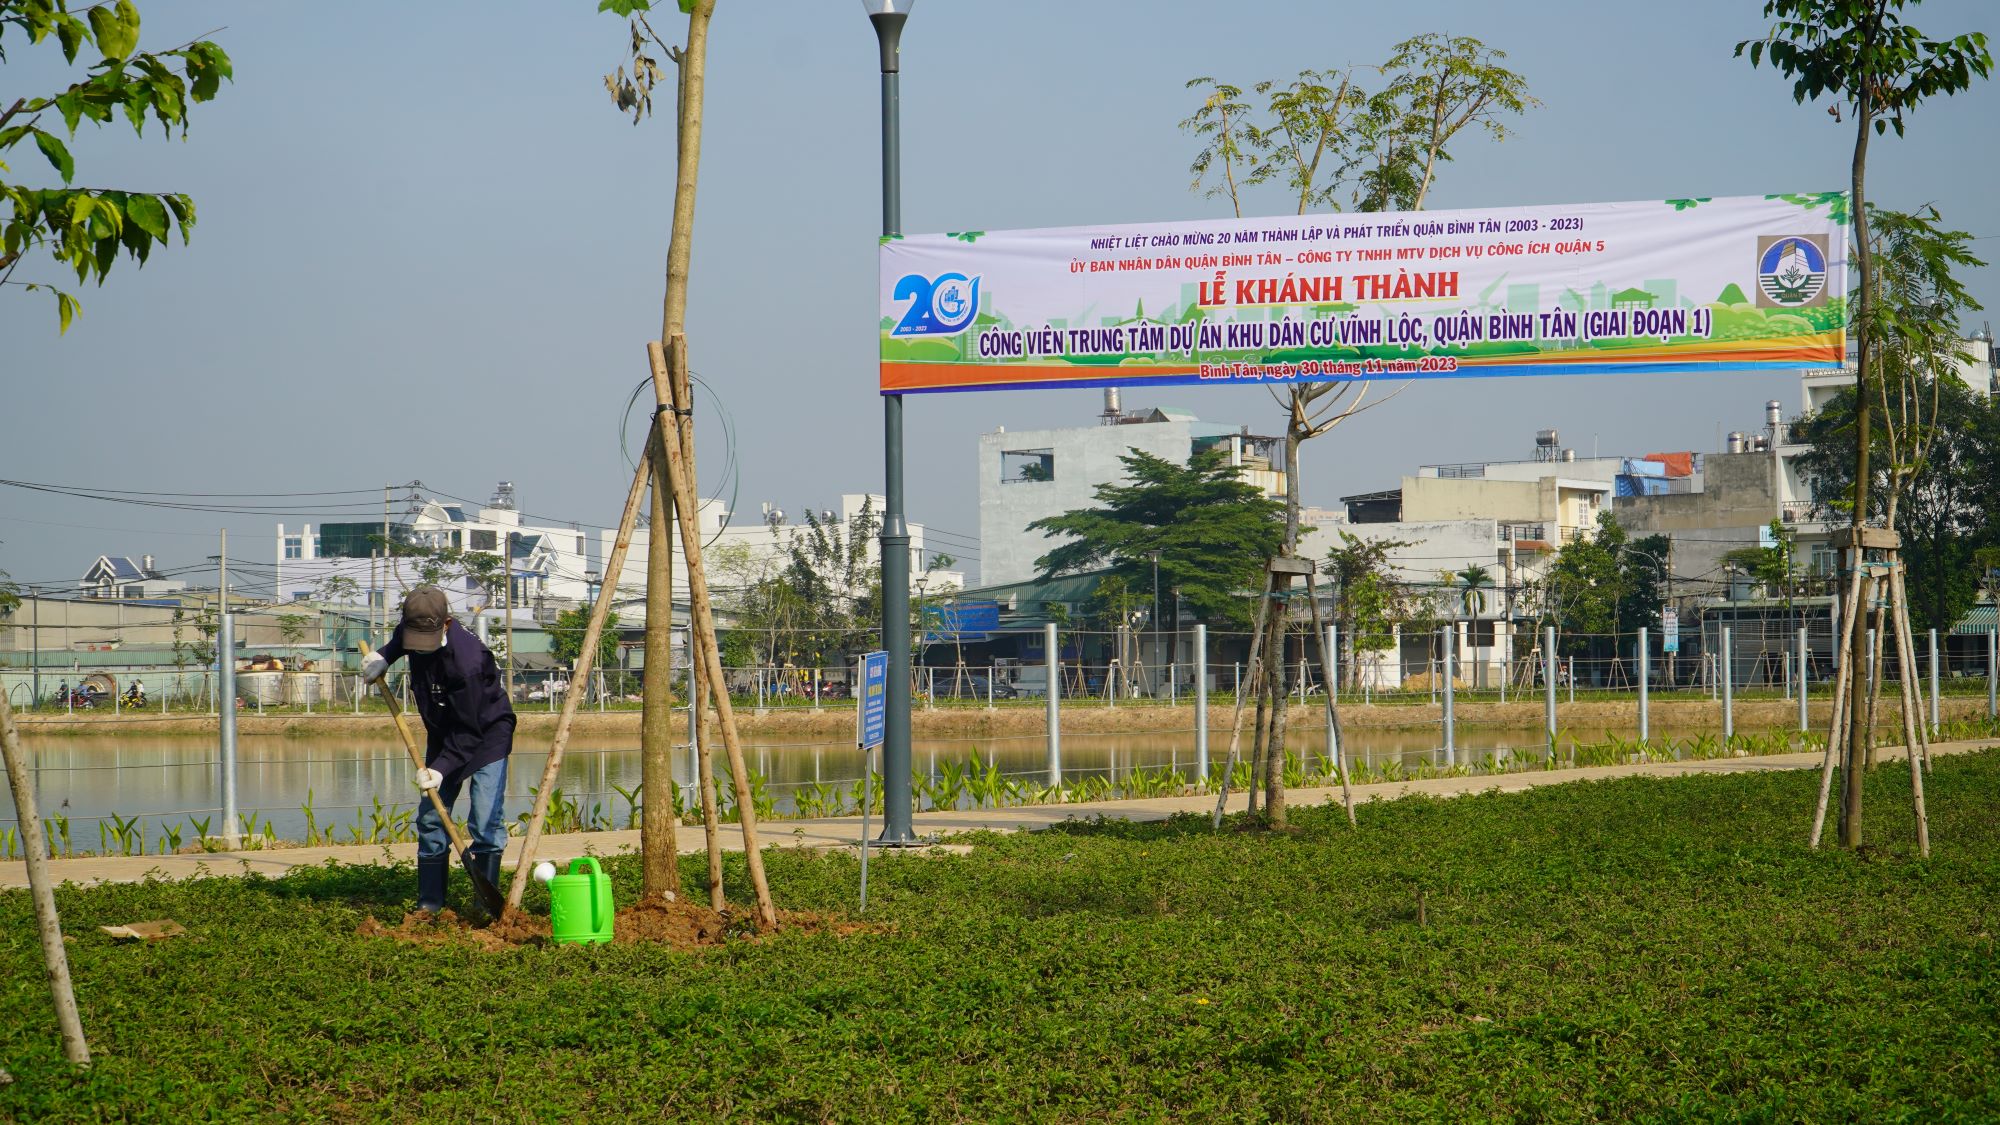 Khánh thành công viên gần 20 tỷ đồng ở quận Bình Tân - Ảnh 6.